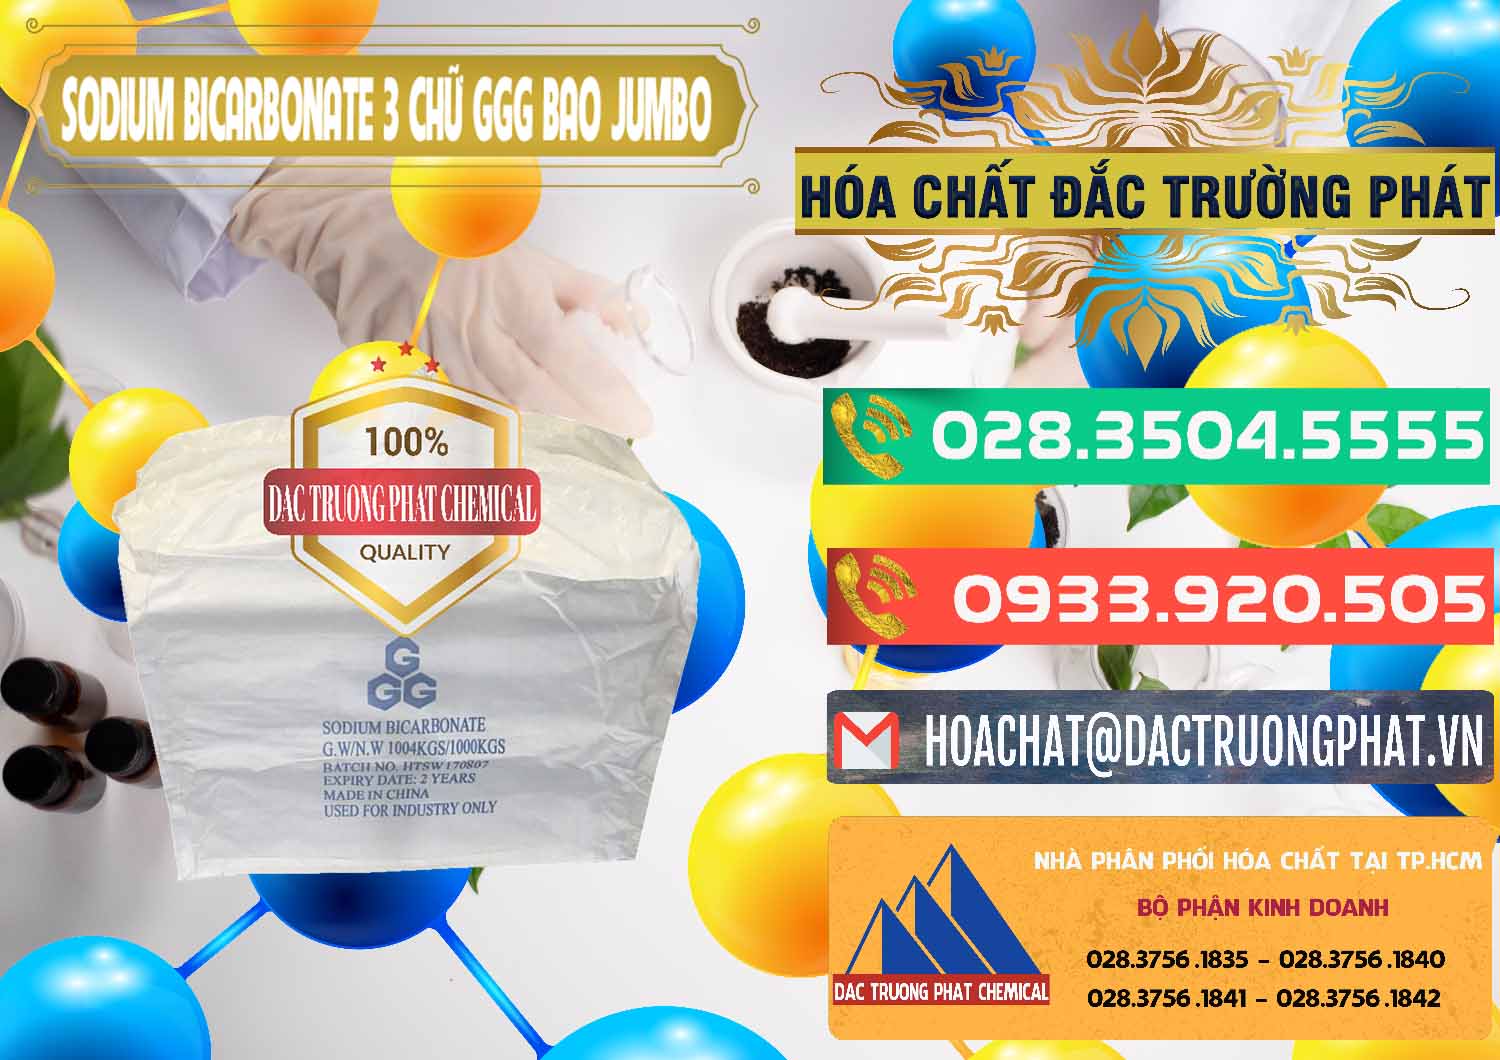 Công ty phân phối và bán Sodium Bicarbonate – Bicar NaHCO3 Food Grade 3 Chữ GGG Bao Jumbo ( Bành ) Trung Quốc China - 0260 - Đơn vị nhập khẩu và phân phối hóa chất tại TP.HCM - congtyhoachat.com.vn